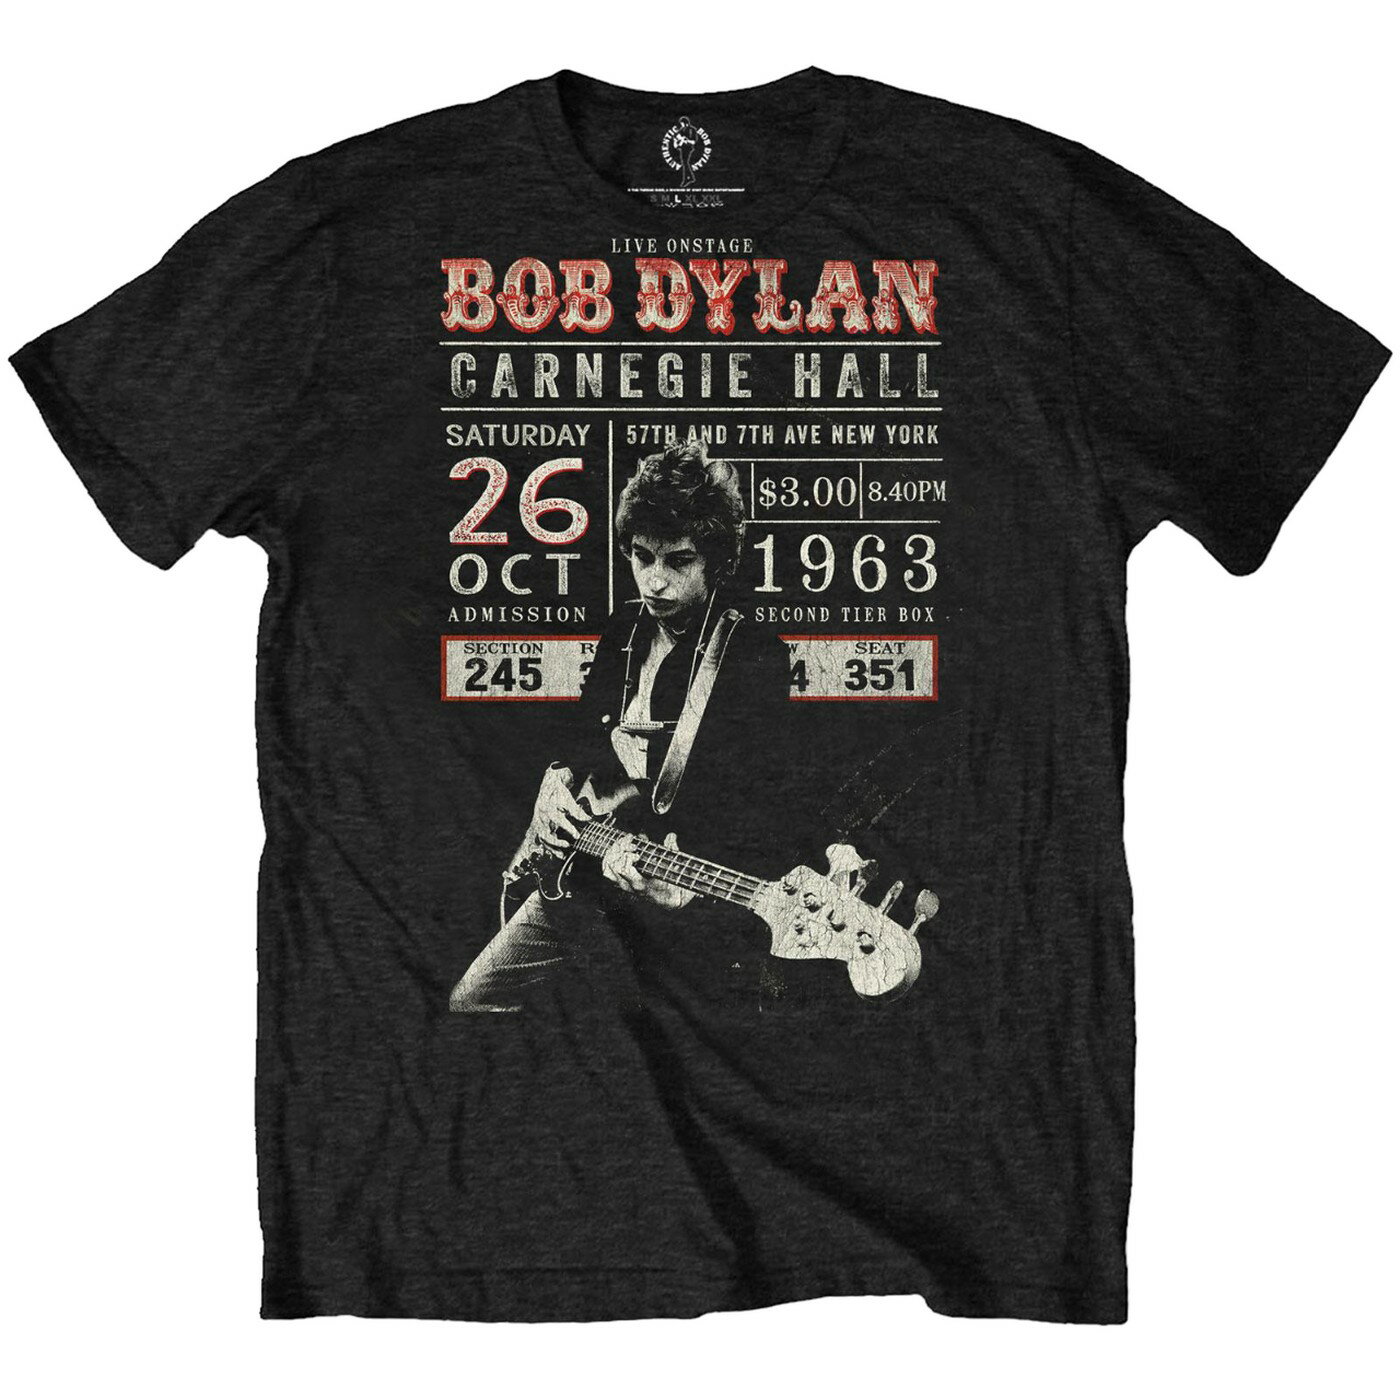 (ボブ・ディラン) Bob Dylan オフィシャル商品 ユニセックス Carnegie Hall ´63 Tシャツ 半袖 トップス 【海外通販】